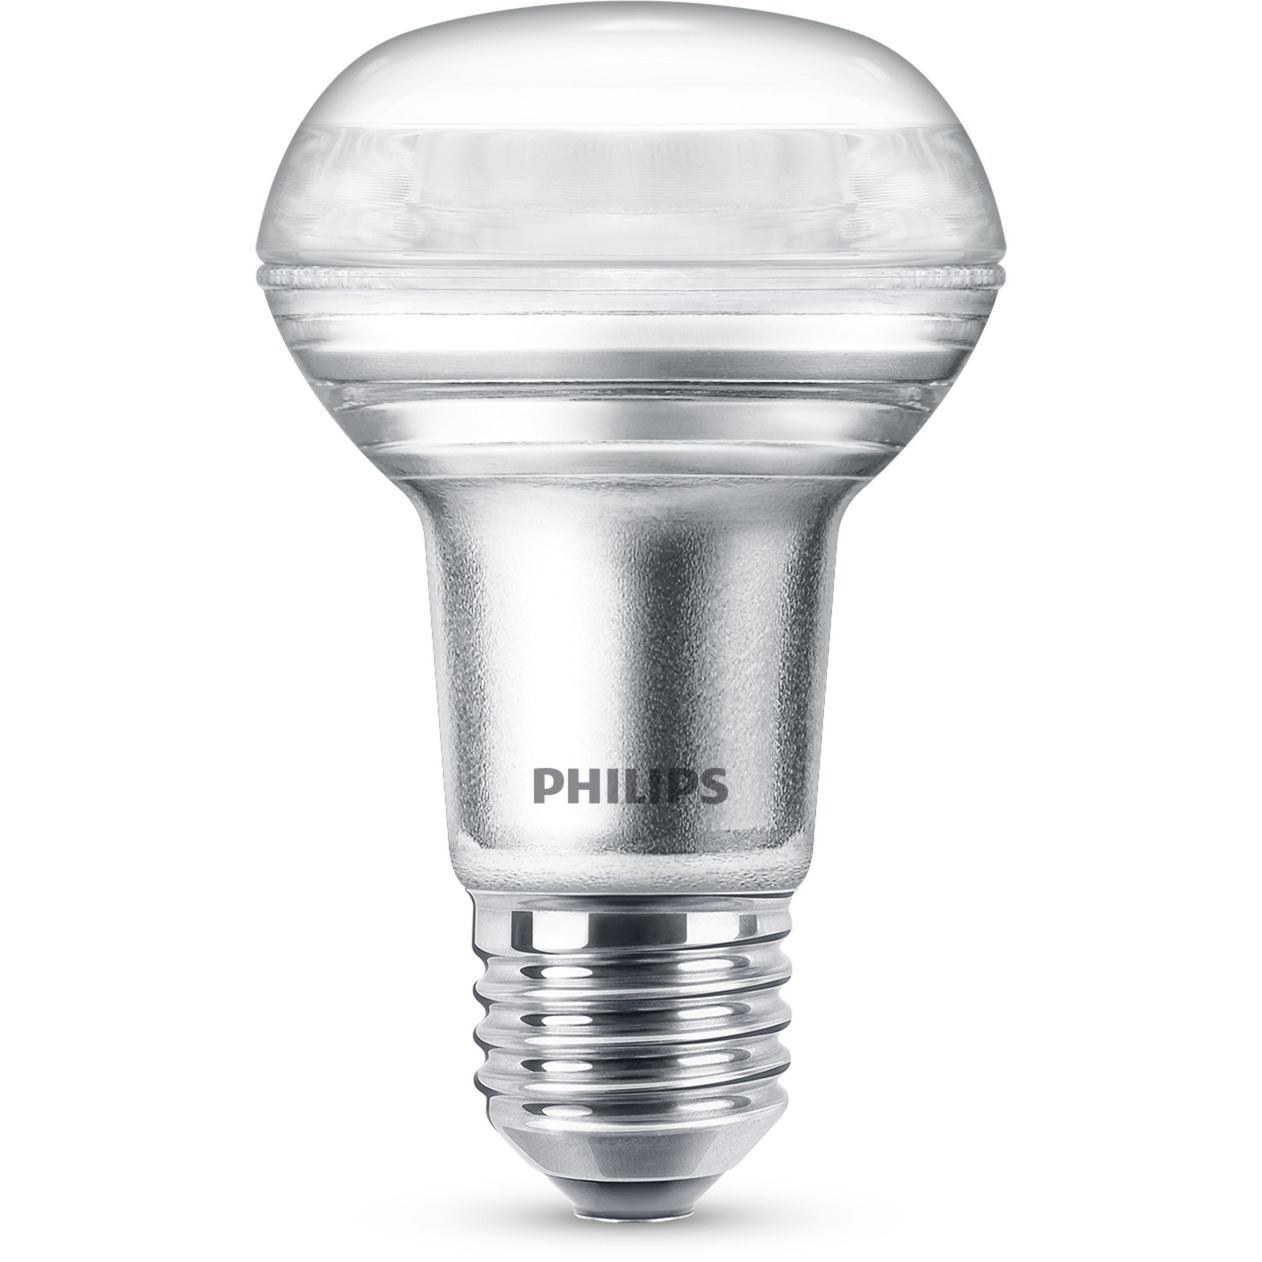 CorePro LEDspot D 4.5-60W R63 E27 827 36D, LED-Lampe von Philips